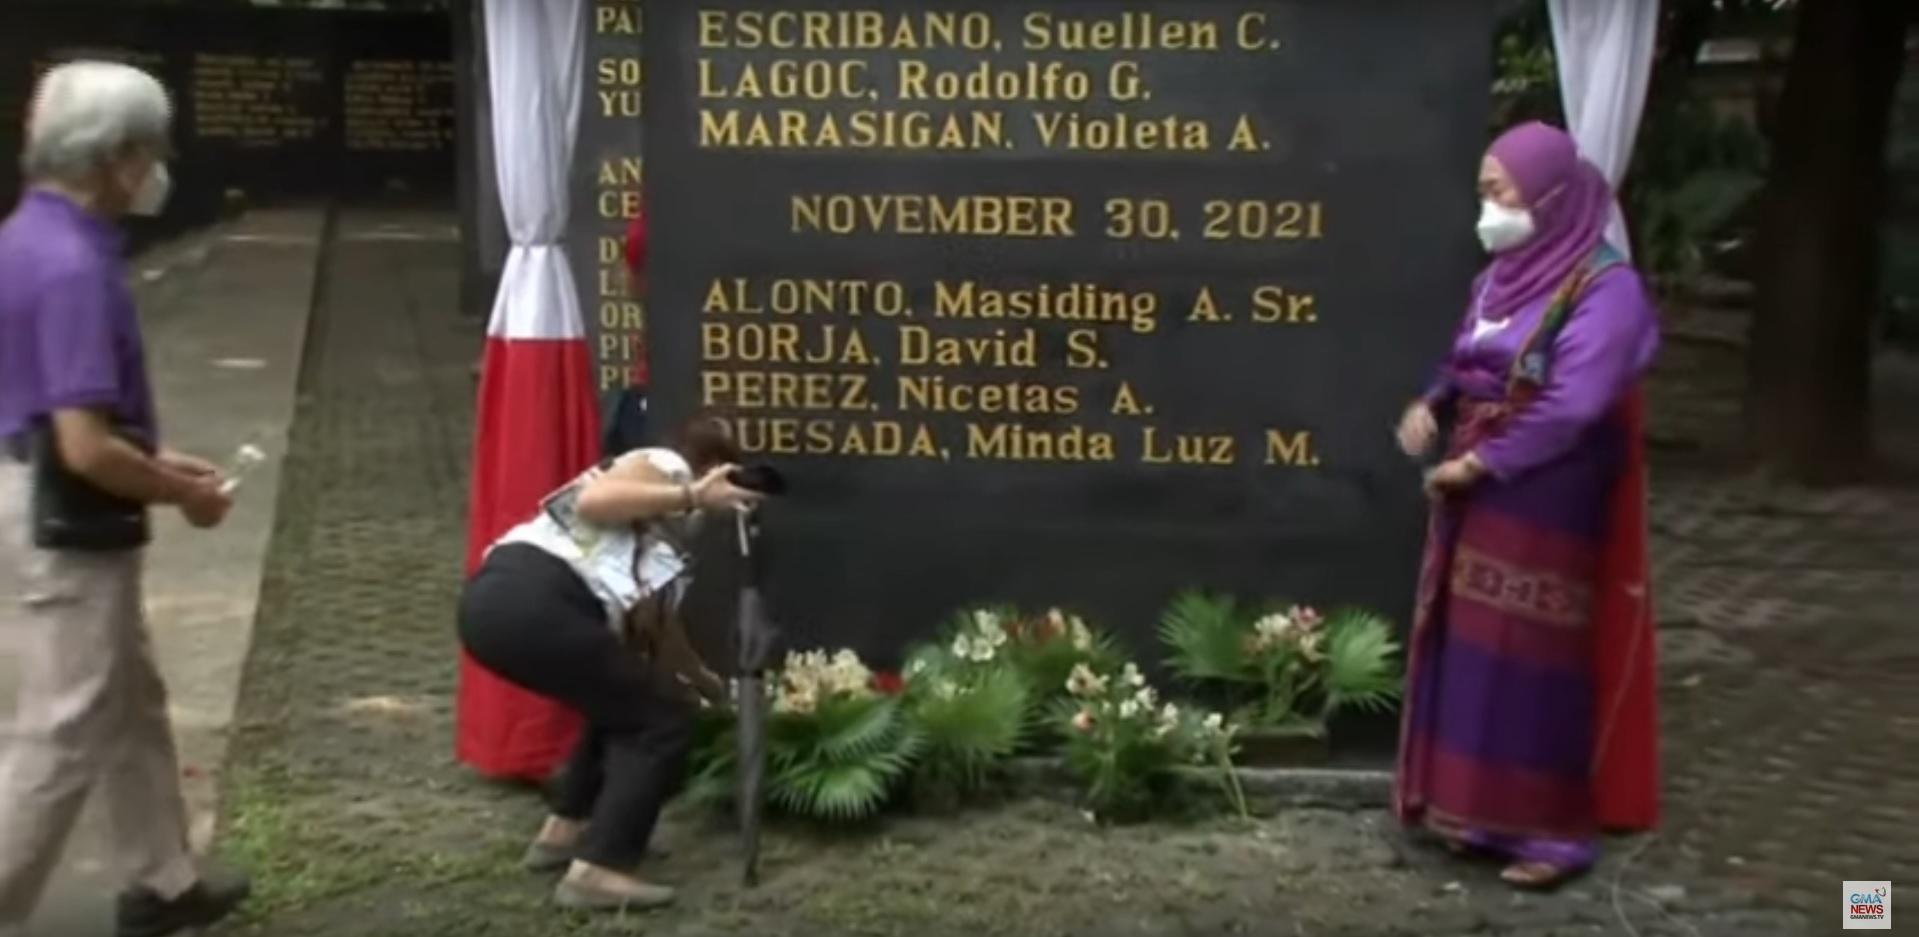 Enam dilantik sebagai martir dan pahlawan karena menentang kediktatoran Marcos GMA News Online